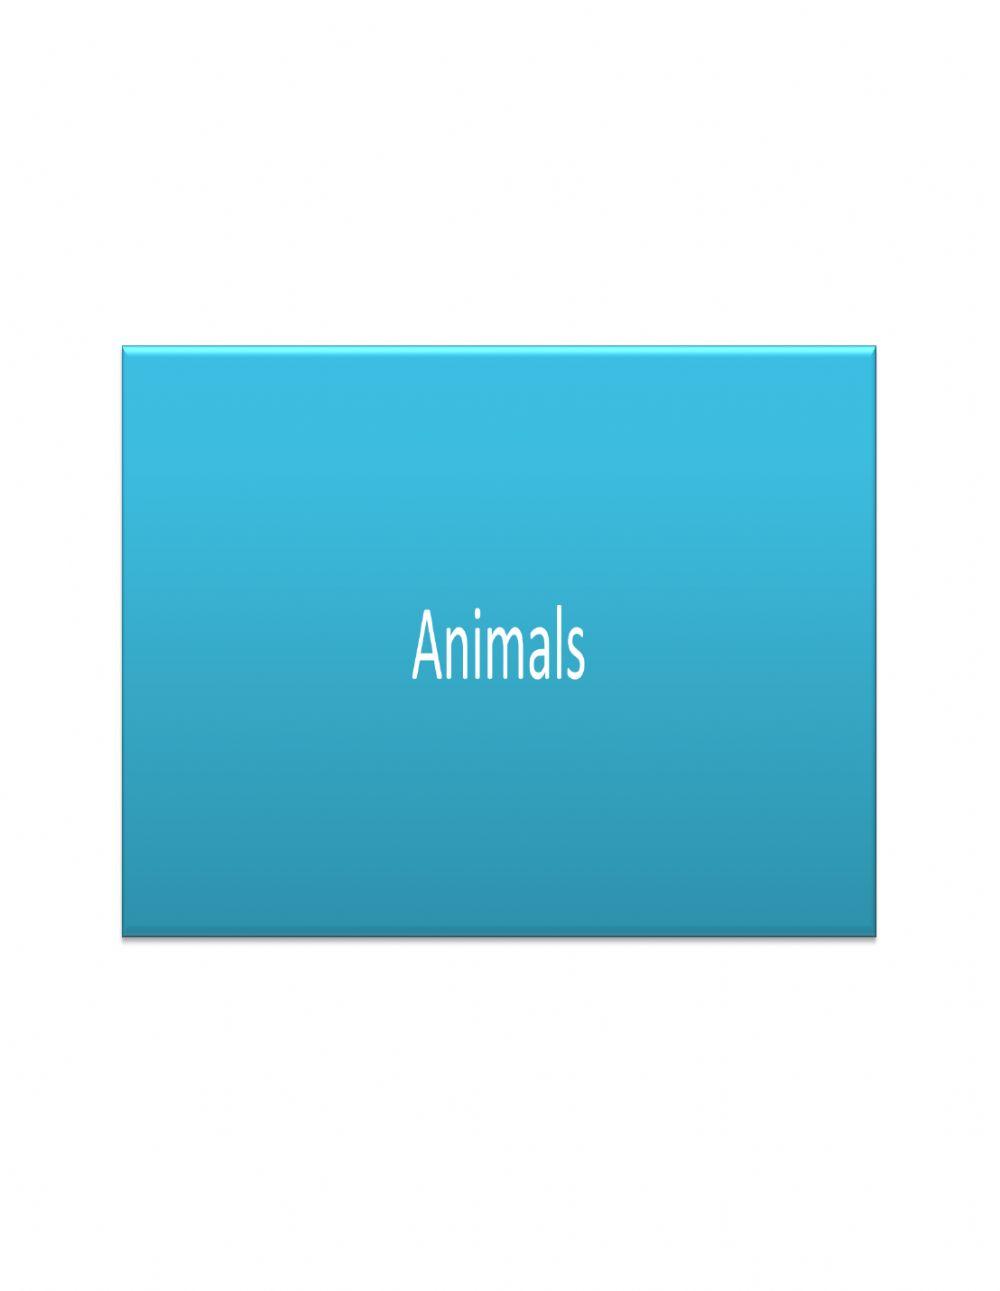 Identifying animals